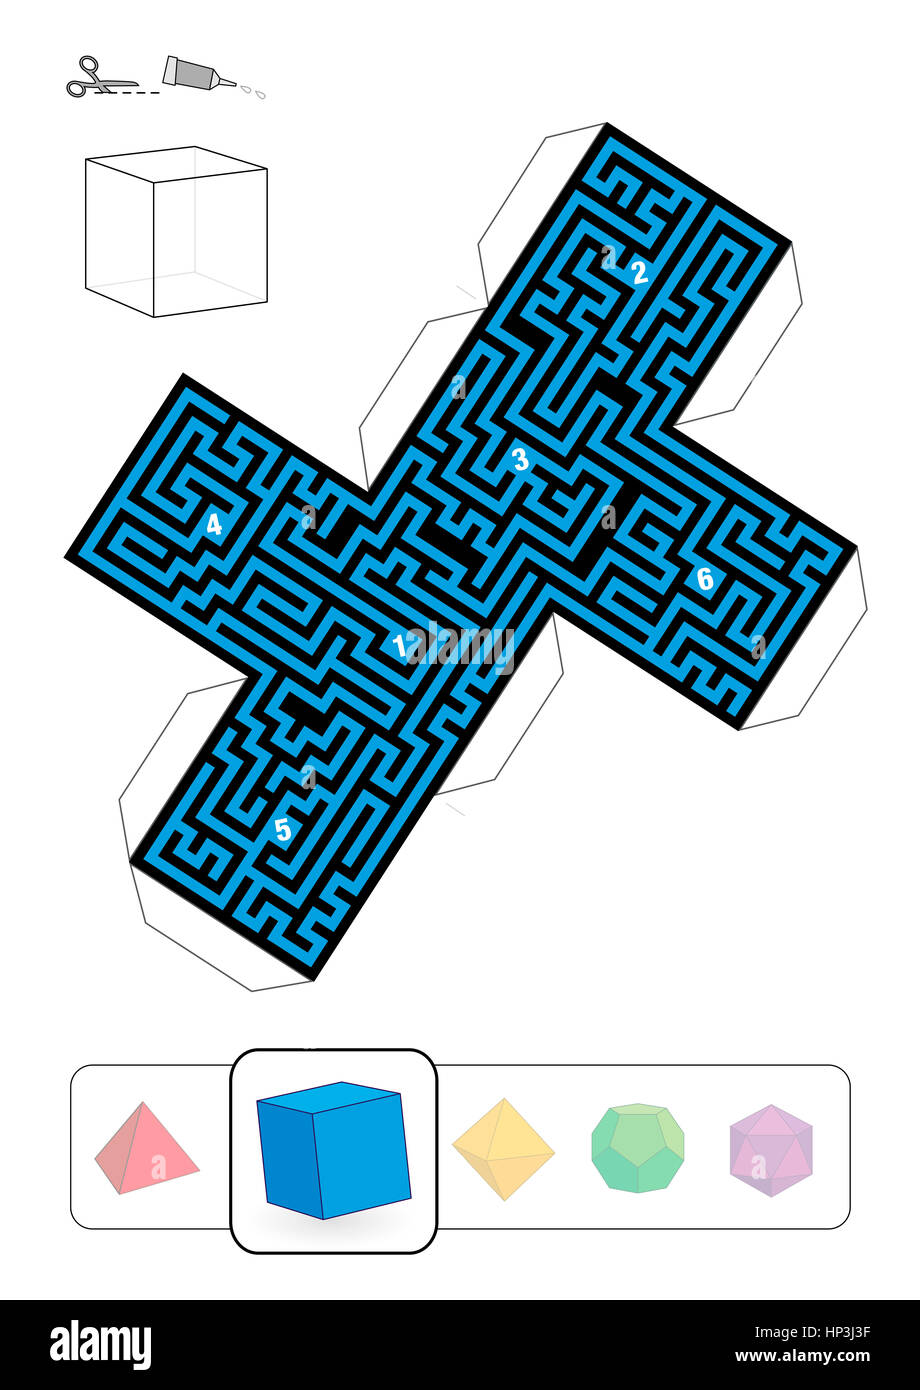 HEXAHEDRON DEDALO - modello di uno dei cinque solidi platonici labirinti - Stampa su carta pesante, cut it out, fare un modello 3d e trovare il modo giusto da 1 Foto Stock